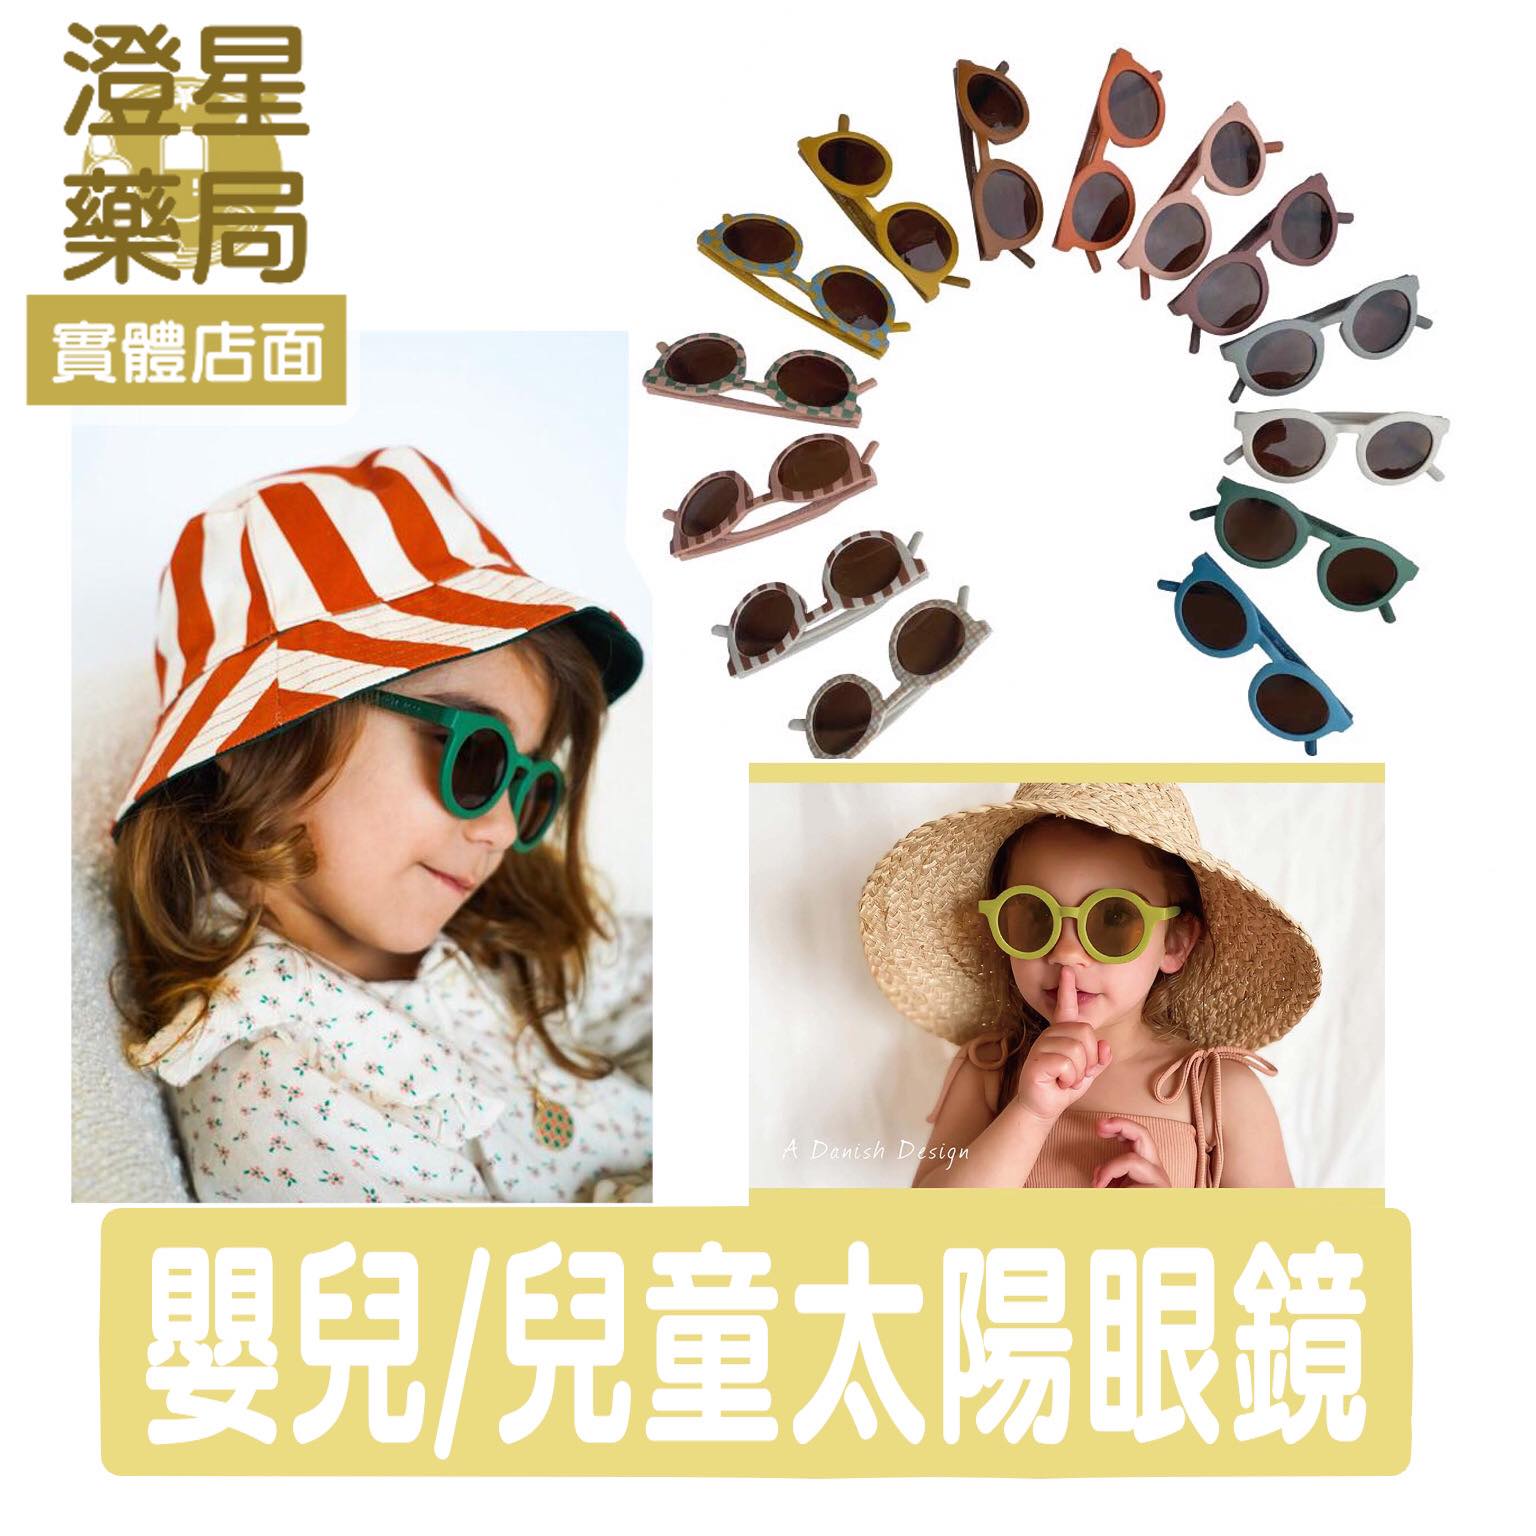 ⭐澄星藥局⭐ GRECH&CO 丹麥 V3偏光眼鏡 二代新款 兒童太陽眼鏡 寶寶墨鏡 兒童墨鏡 UV400 復古圓框